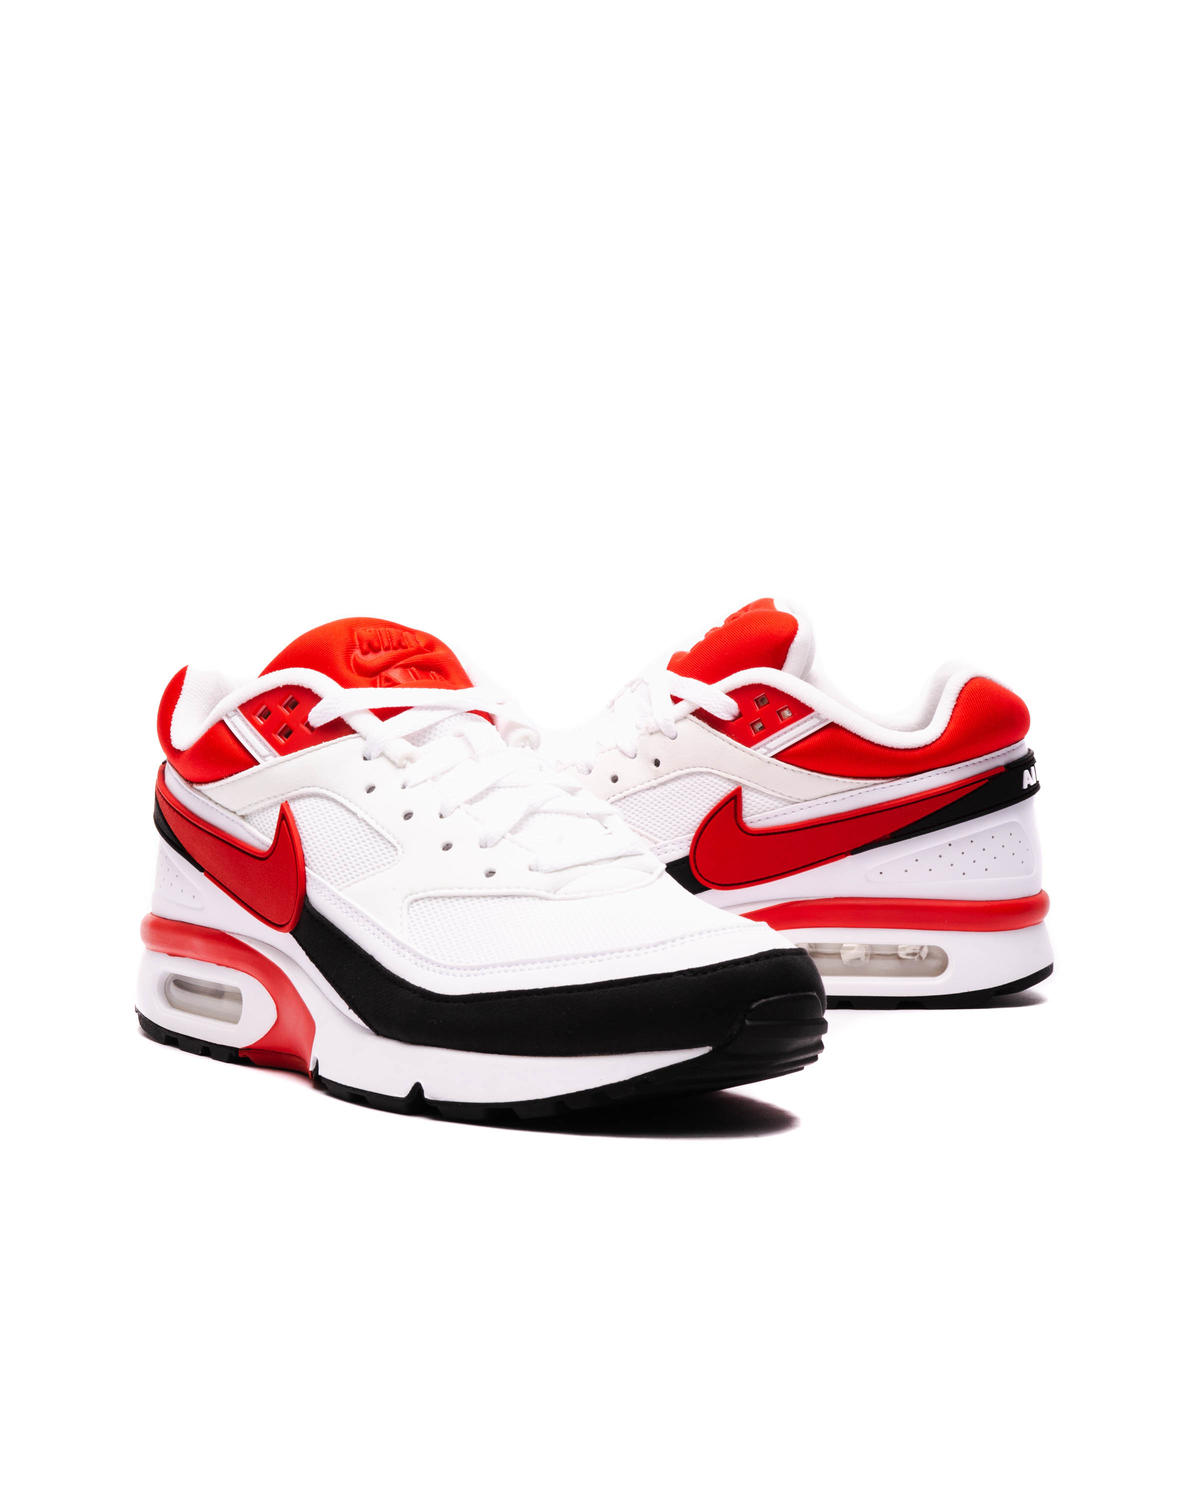 Nike Air Max BW OG Sport Red Men's - DN4113-100 - US